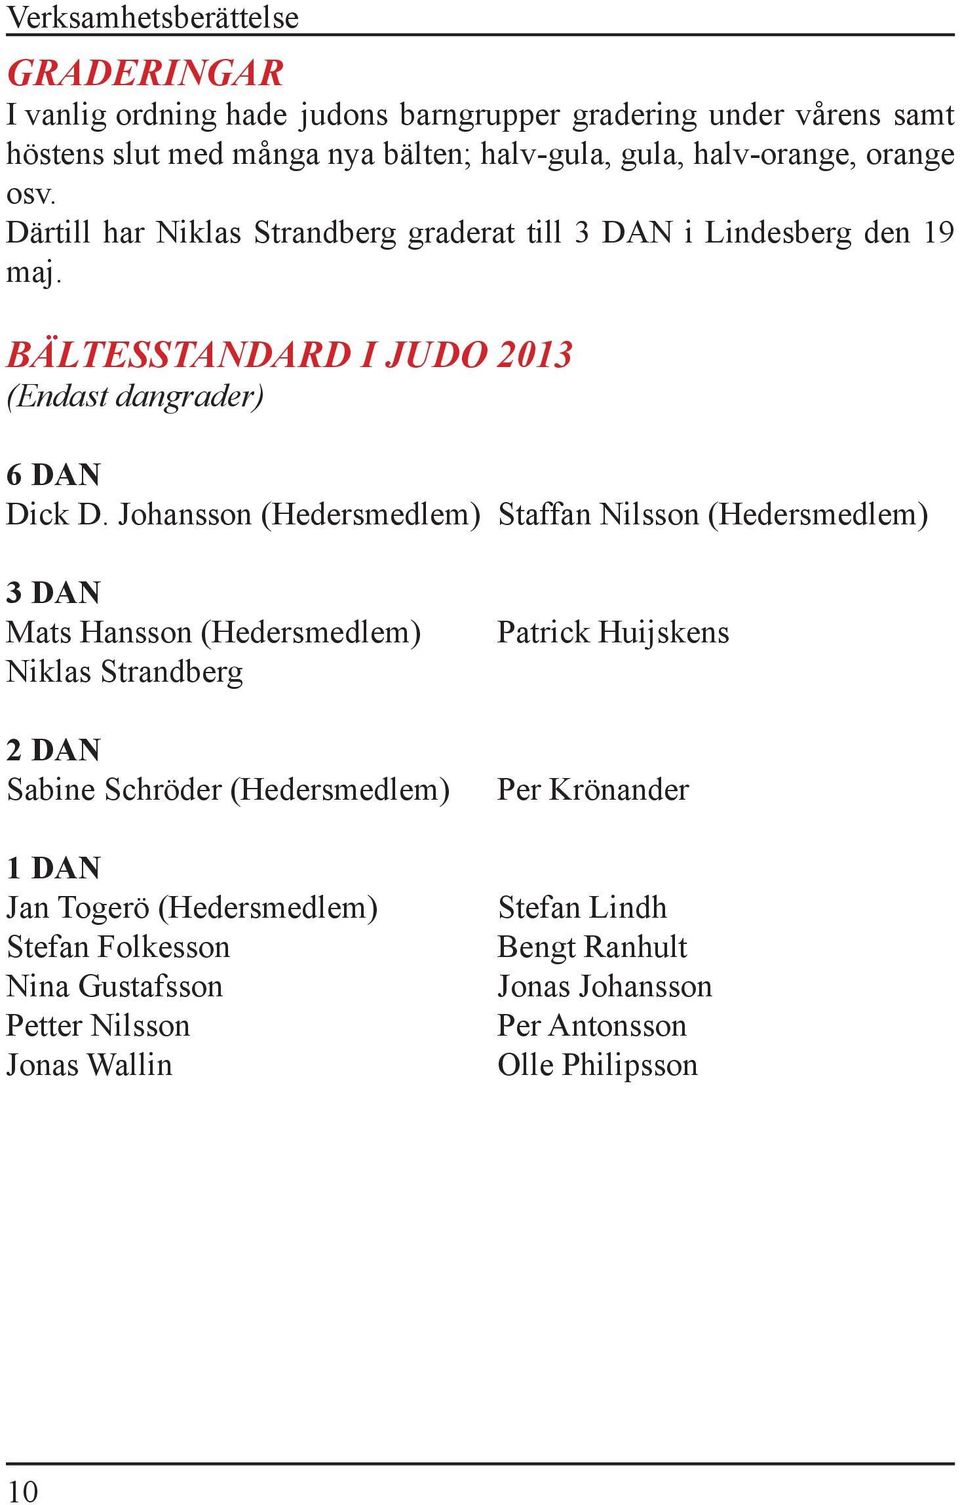 Johansson (Hedersmedlem) Staffan Nilsson (Hedersmedlem) 3 DAN Mats Hansson (Hedersmedlem) Niklas Strandberg 2 DAN Sabine Schröder (Hedersmedlem) 1 DAN Jan Togerö